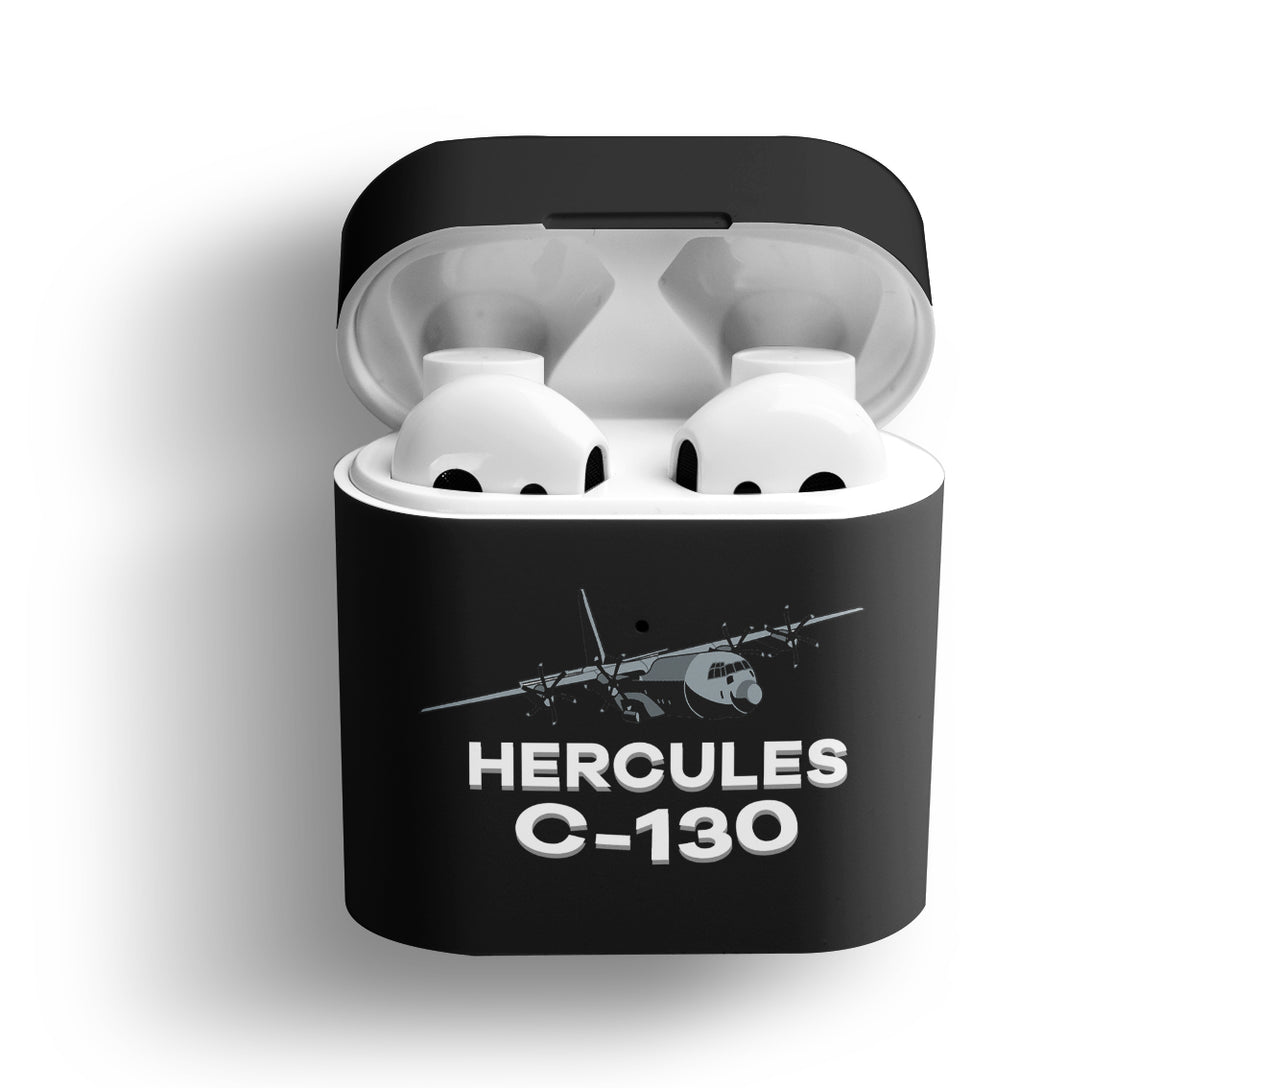 The Hercules C130 Designed AirPods  Cases